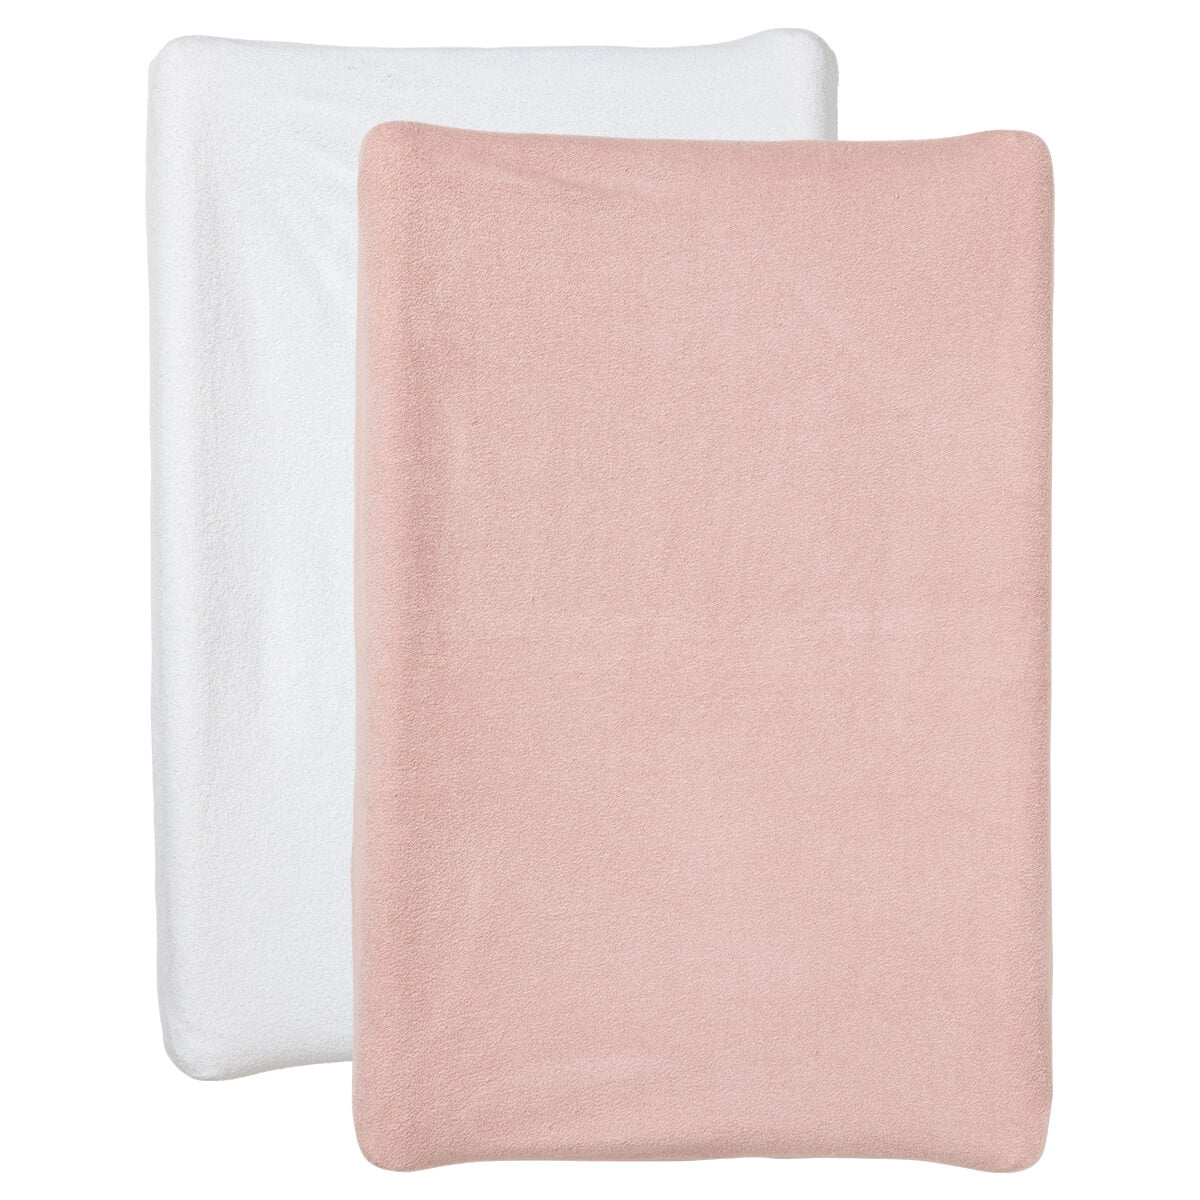 2 housses de matelas à langer bébé rose et blanc en coton 50x70 cm